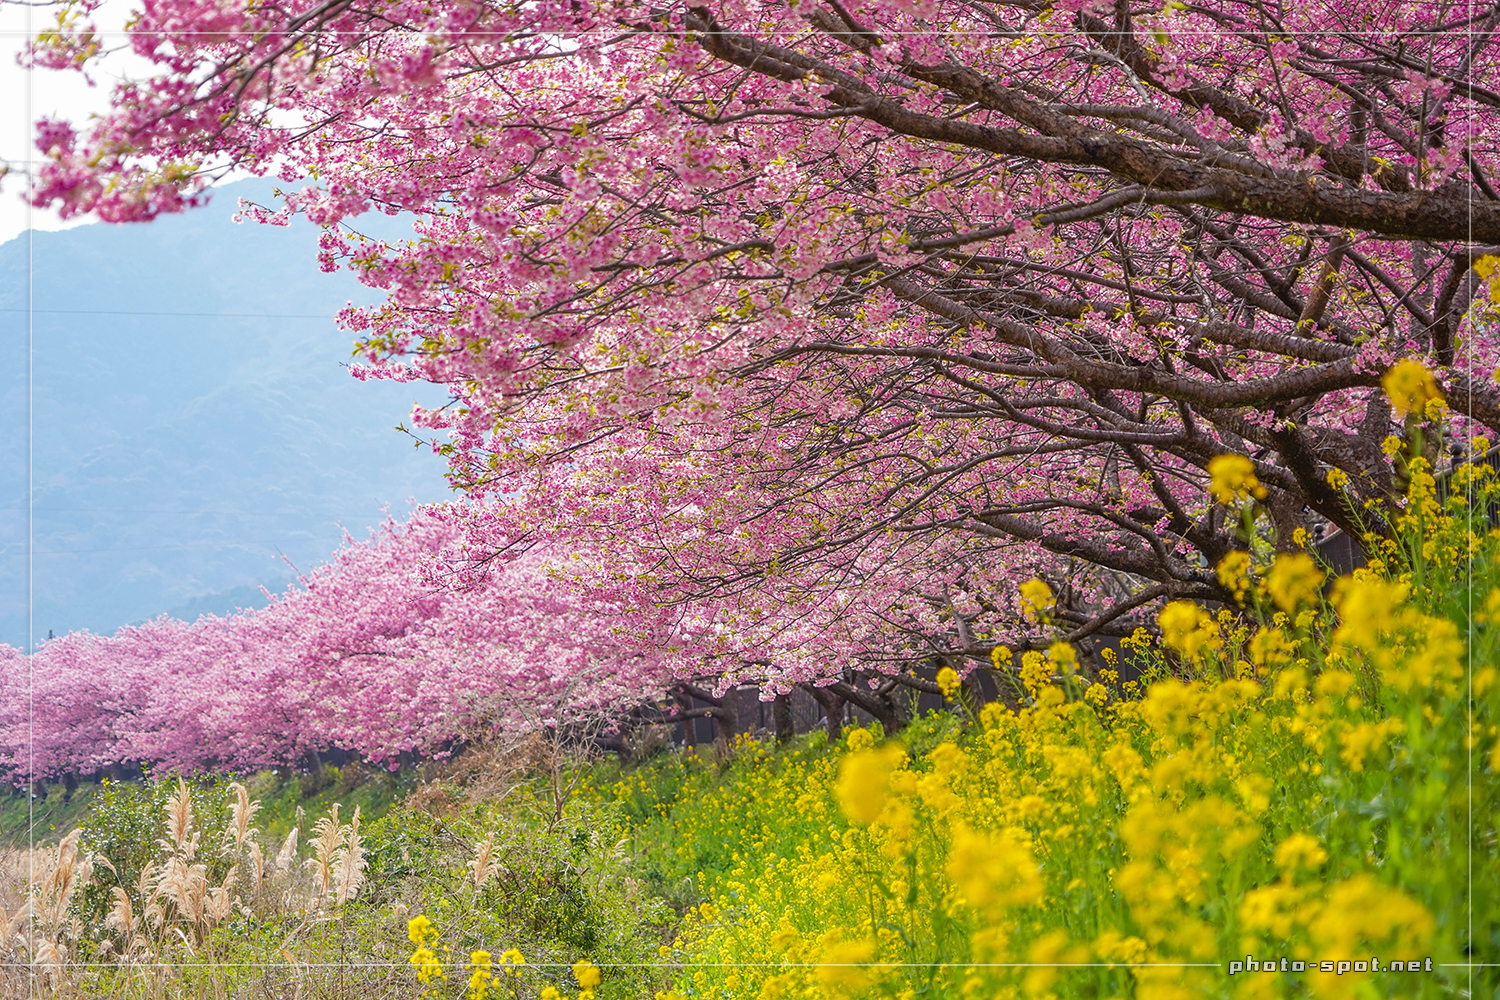 伊豆の河津桜並木と土手に咲き誇る菜の花のコラボ